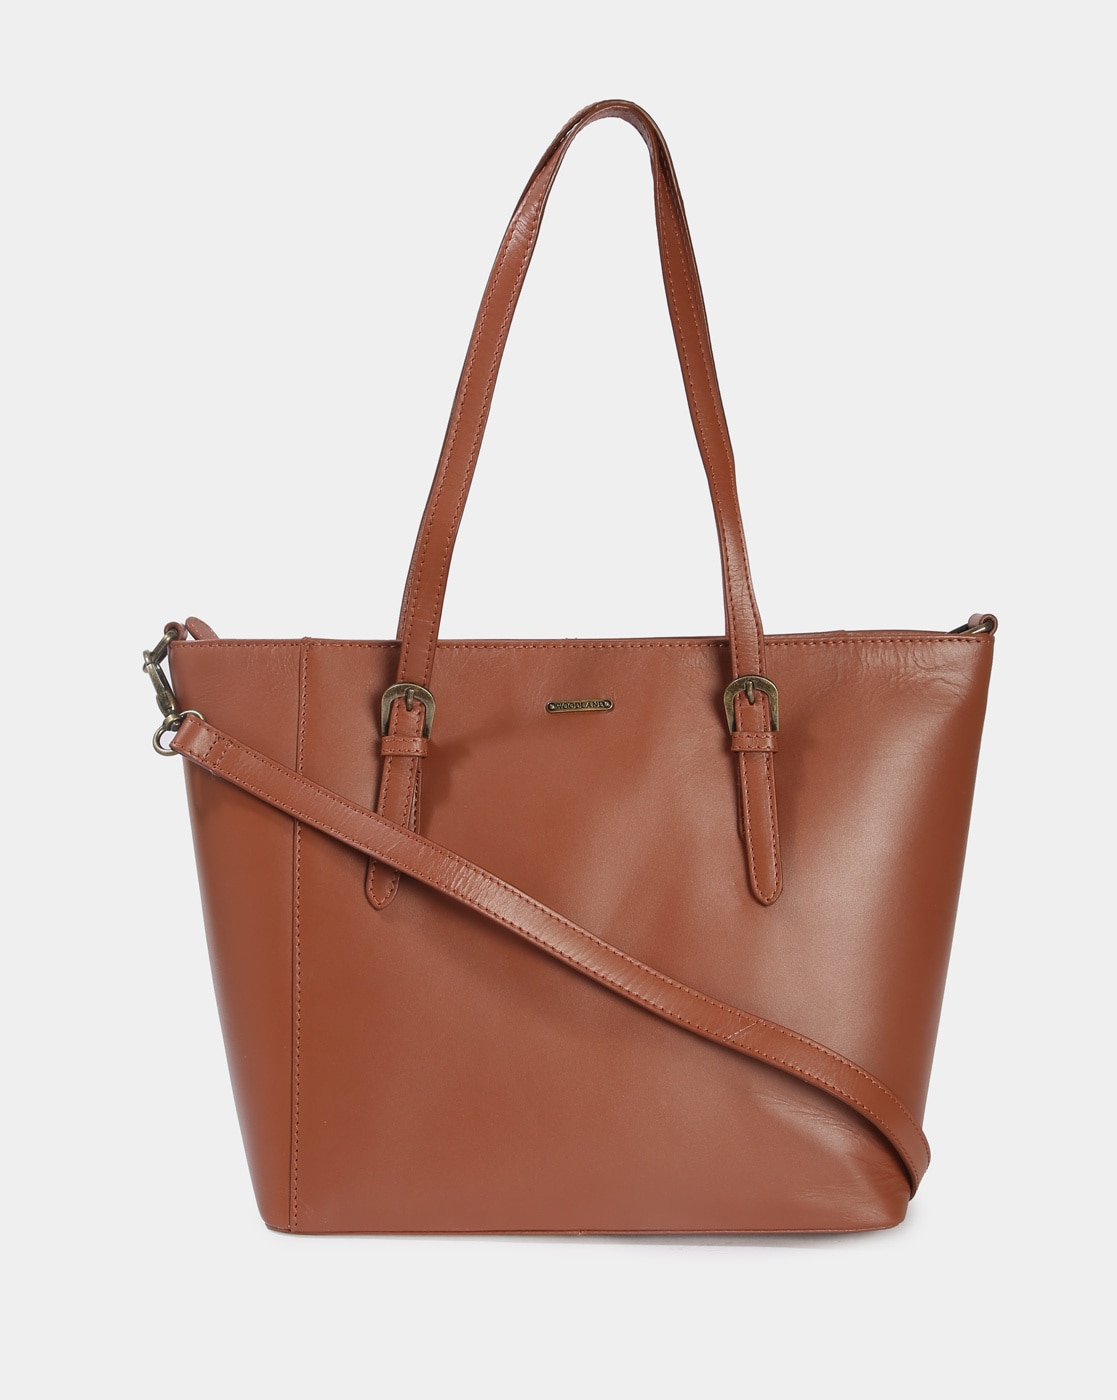 Mimisku handbag set with handbag, sling bag and wallet | Handbag, Sling  bag, Bags